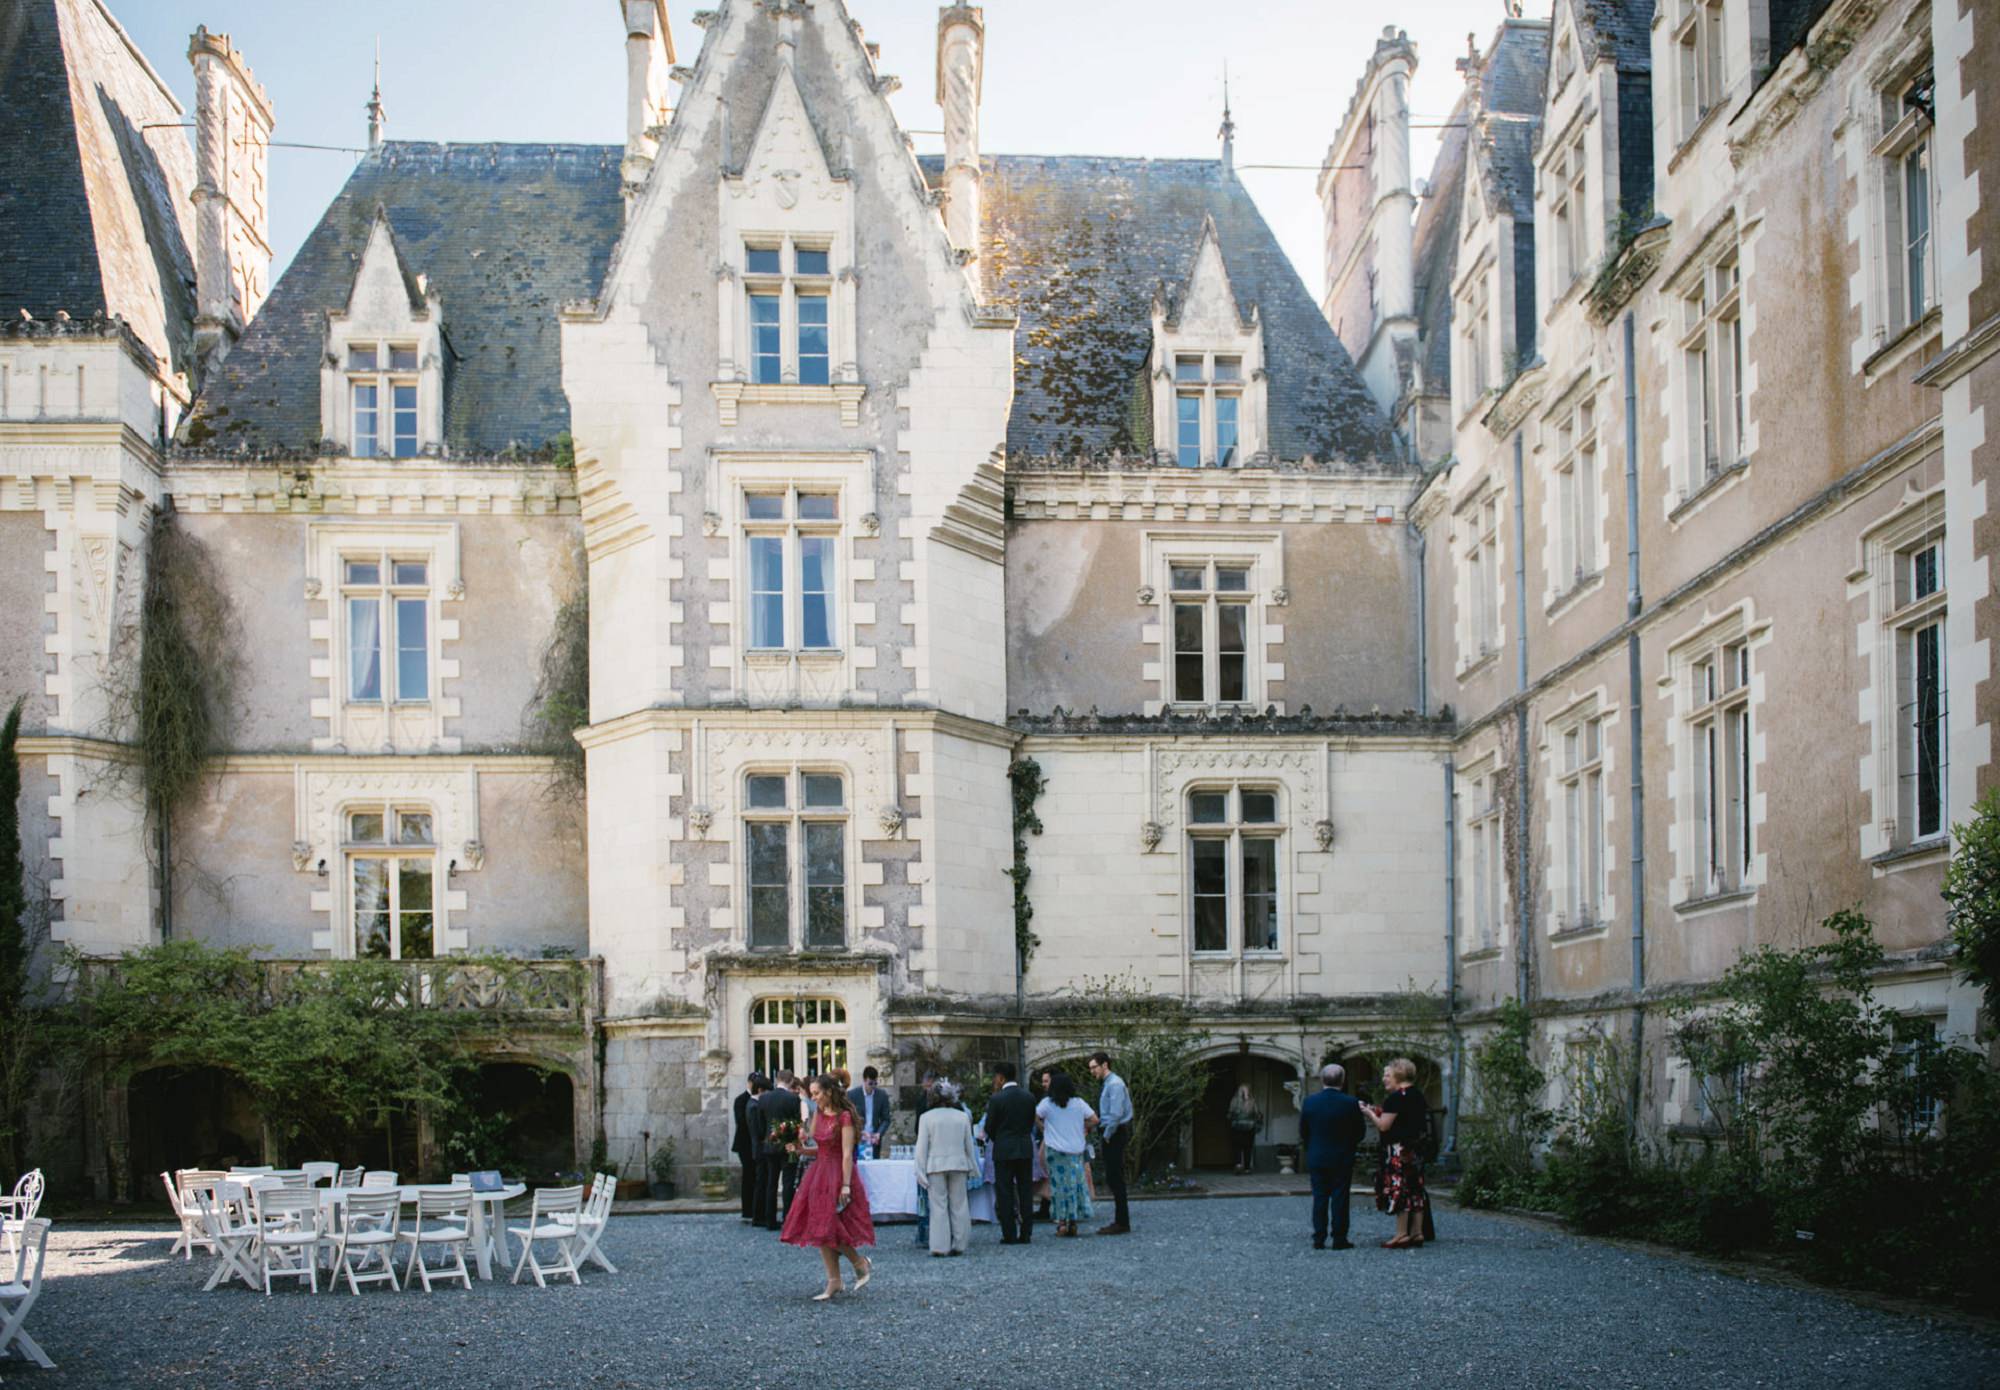 French chateau wedding